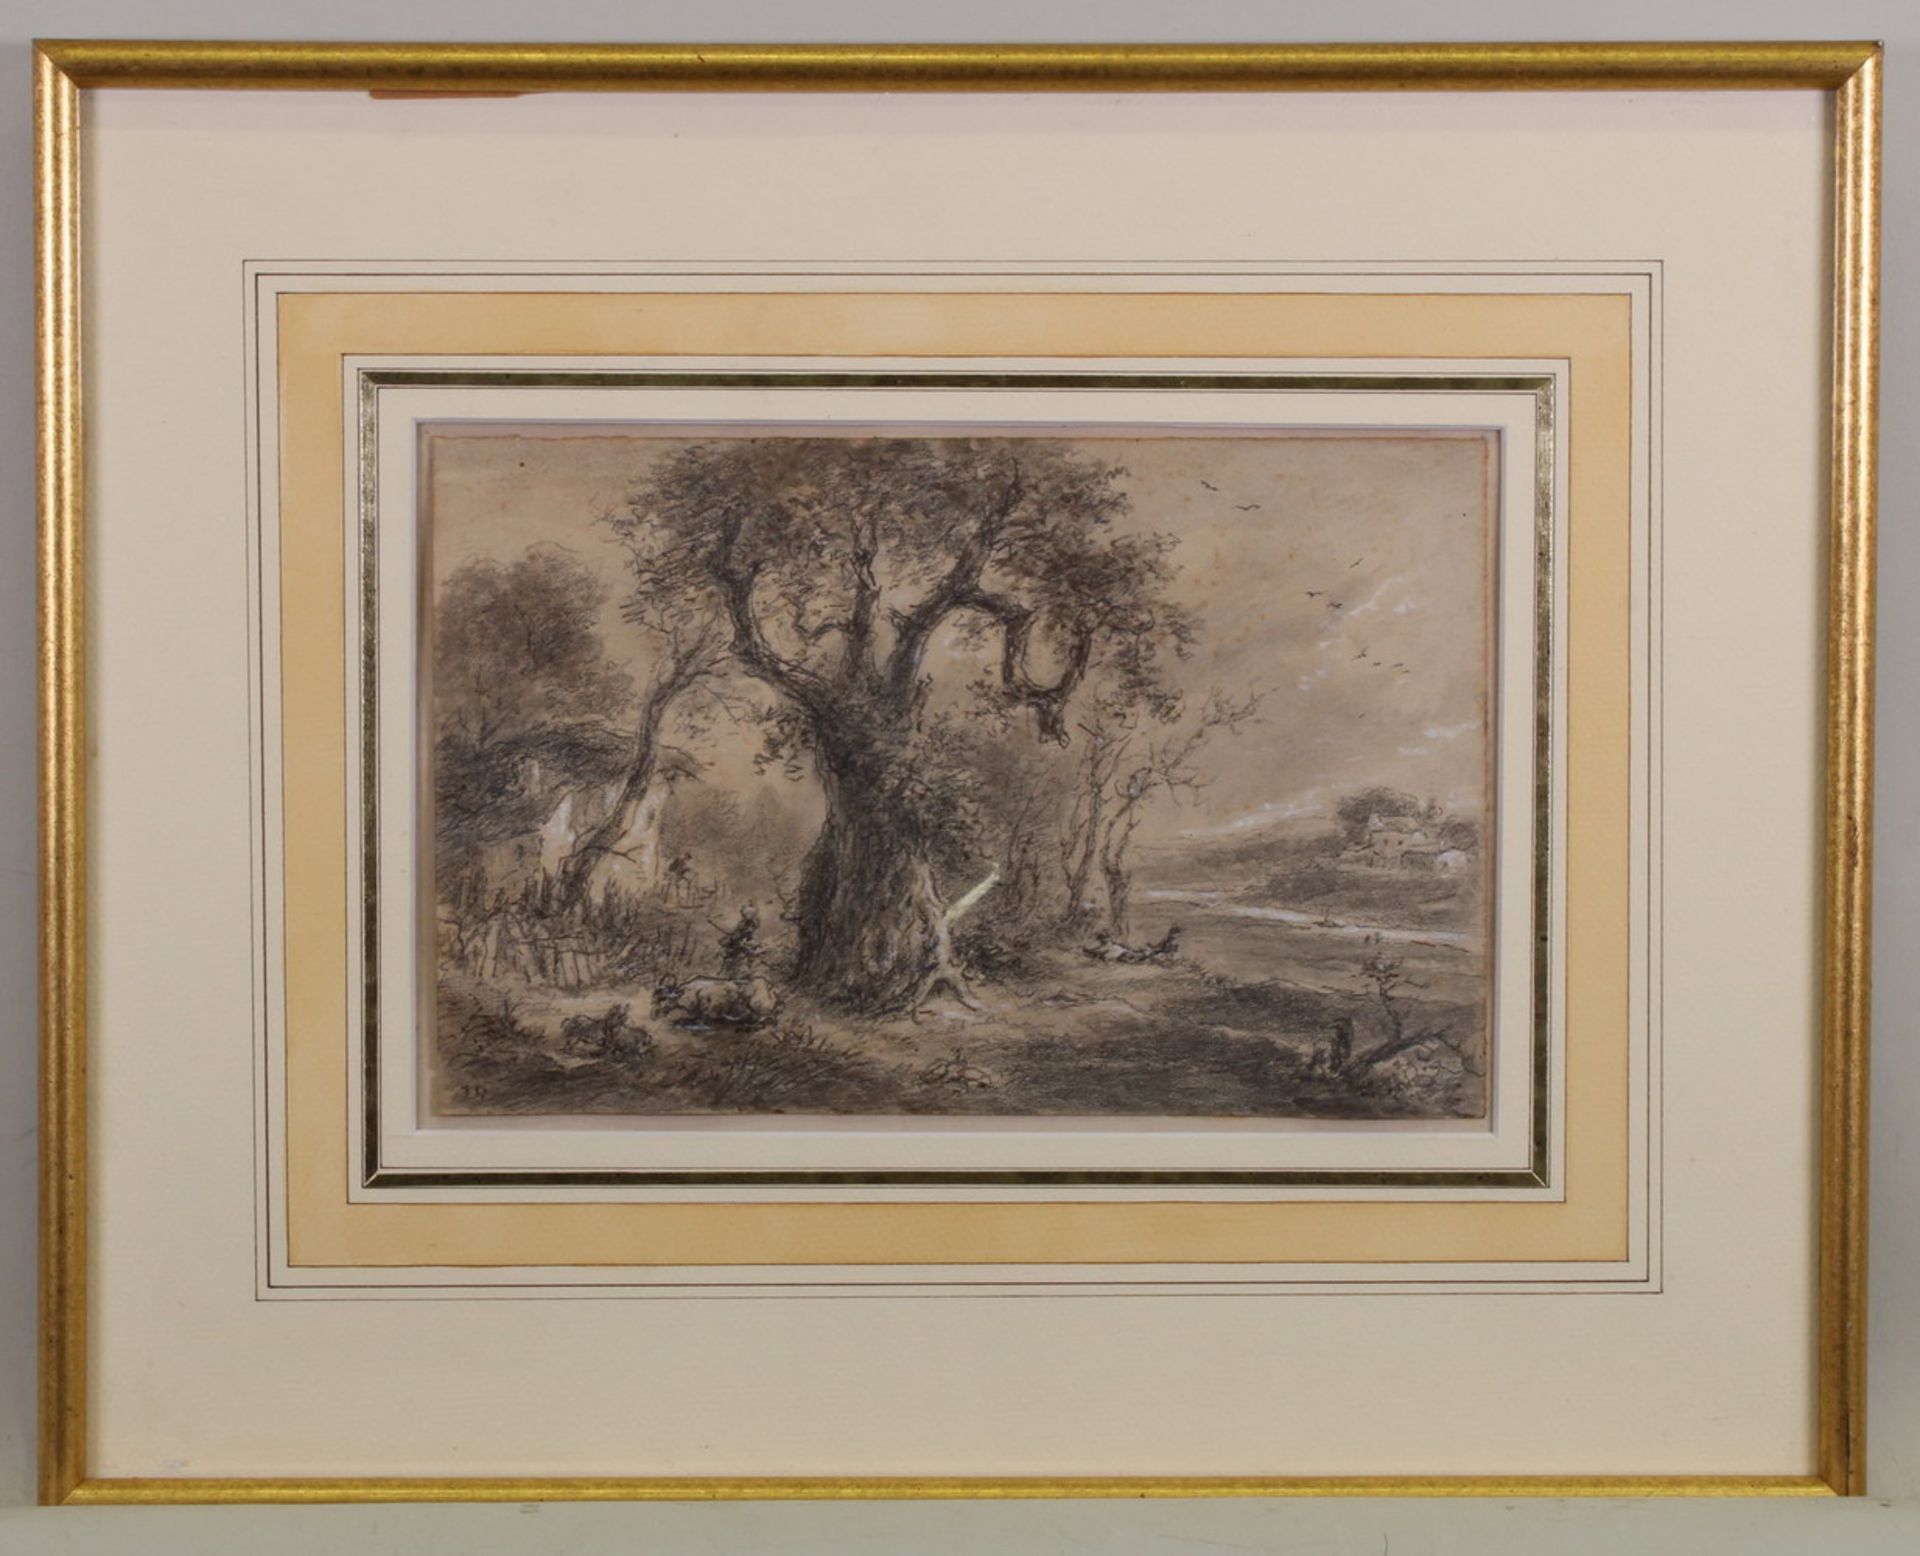 2 Zeichnungen, Mischtechnik, Feder, Kohle, teils laviert, 1x ortsbezeichnet Hyèrs 96 fevrier 1862, - Bild 4 aus 5